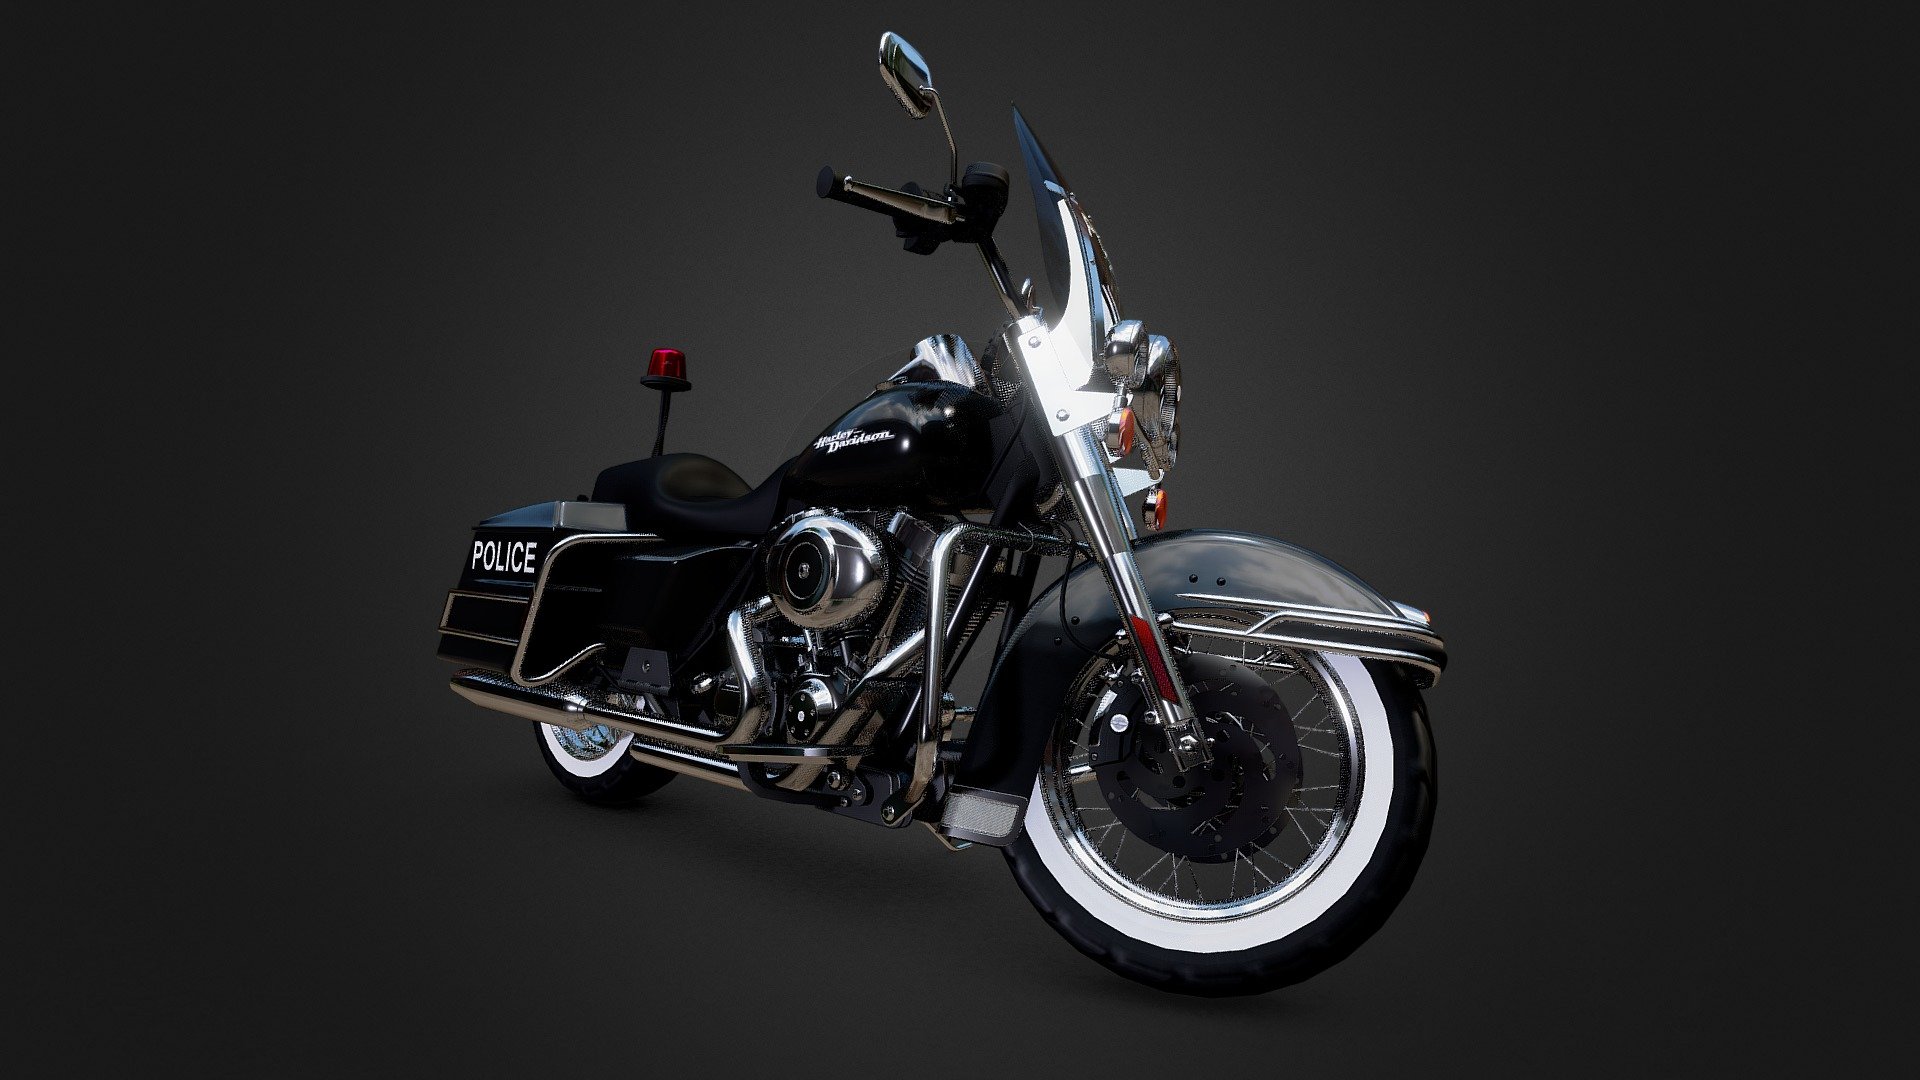 Harley-Davidson Road king  (Police) - Harley-Davidson Police - Download Free 3D model by Comrade1280 3d model